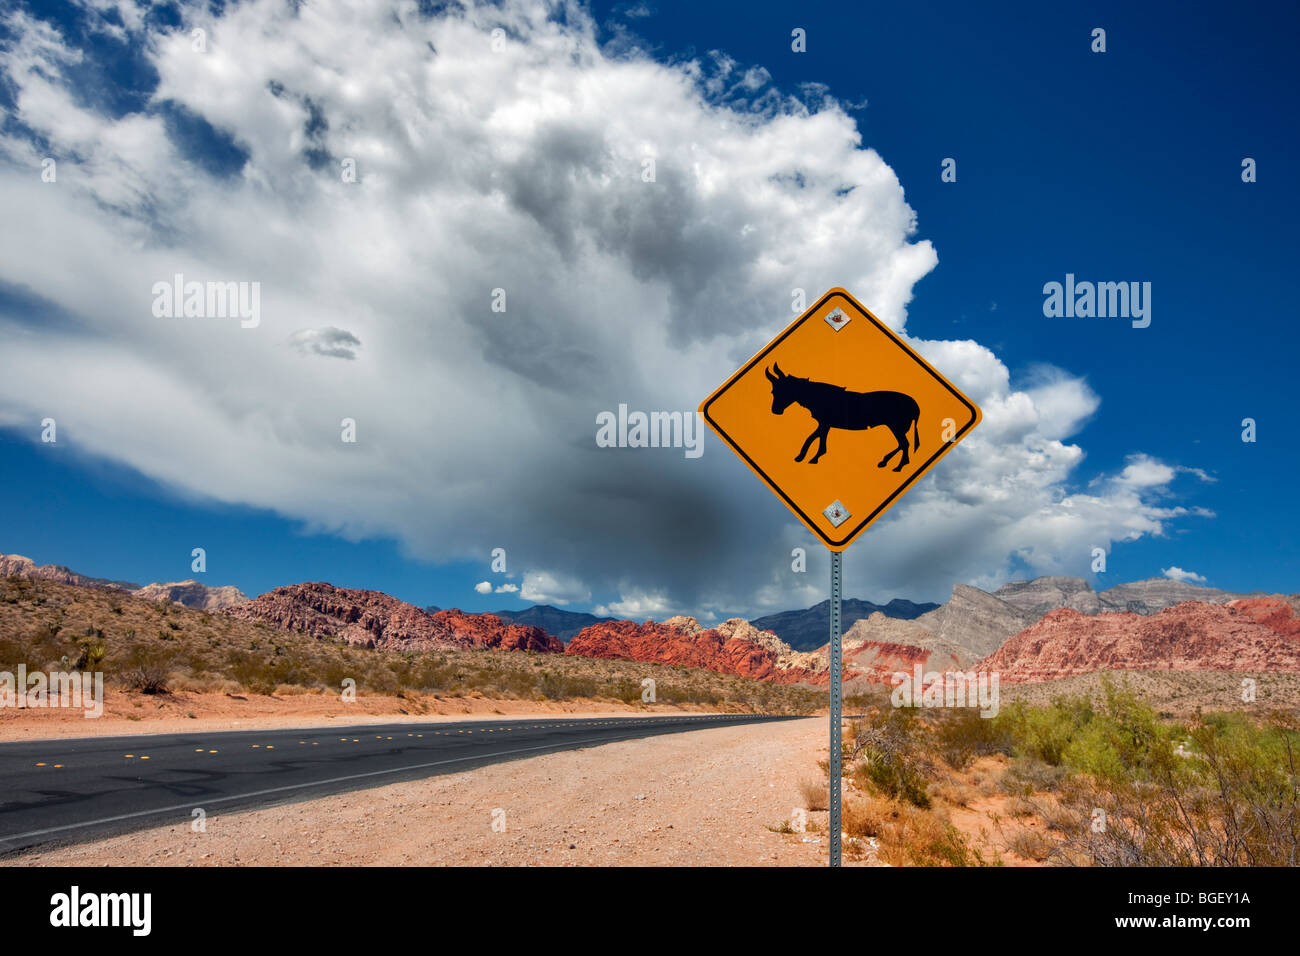 Straße, Maultier Zeichen, Gewitterwolken und Felsformationen im Red Rock Canyon National Conservation Area, Nevada Stockfoto